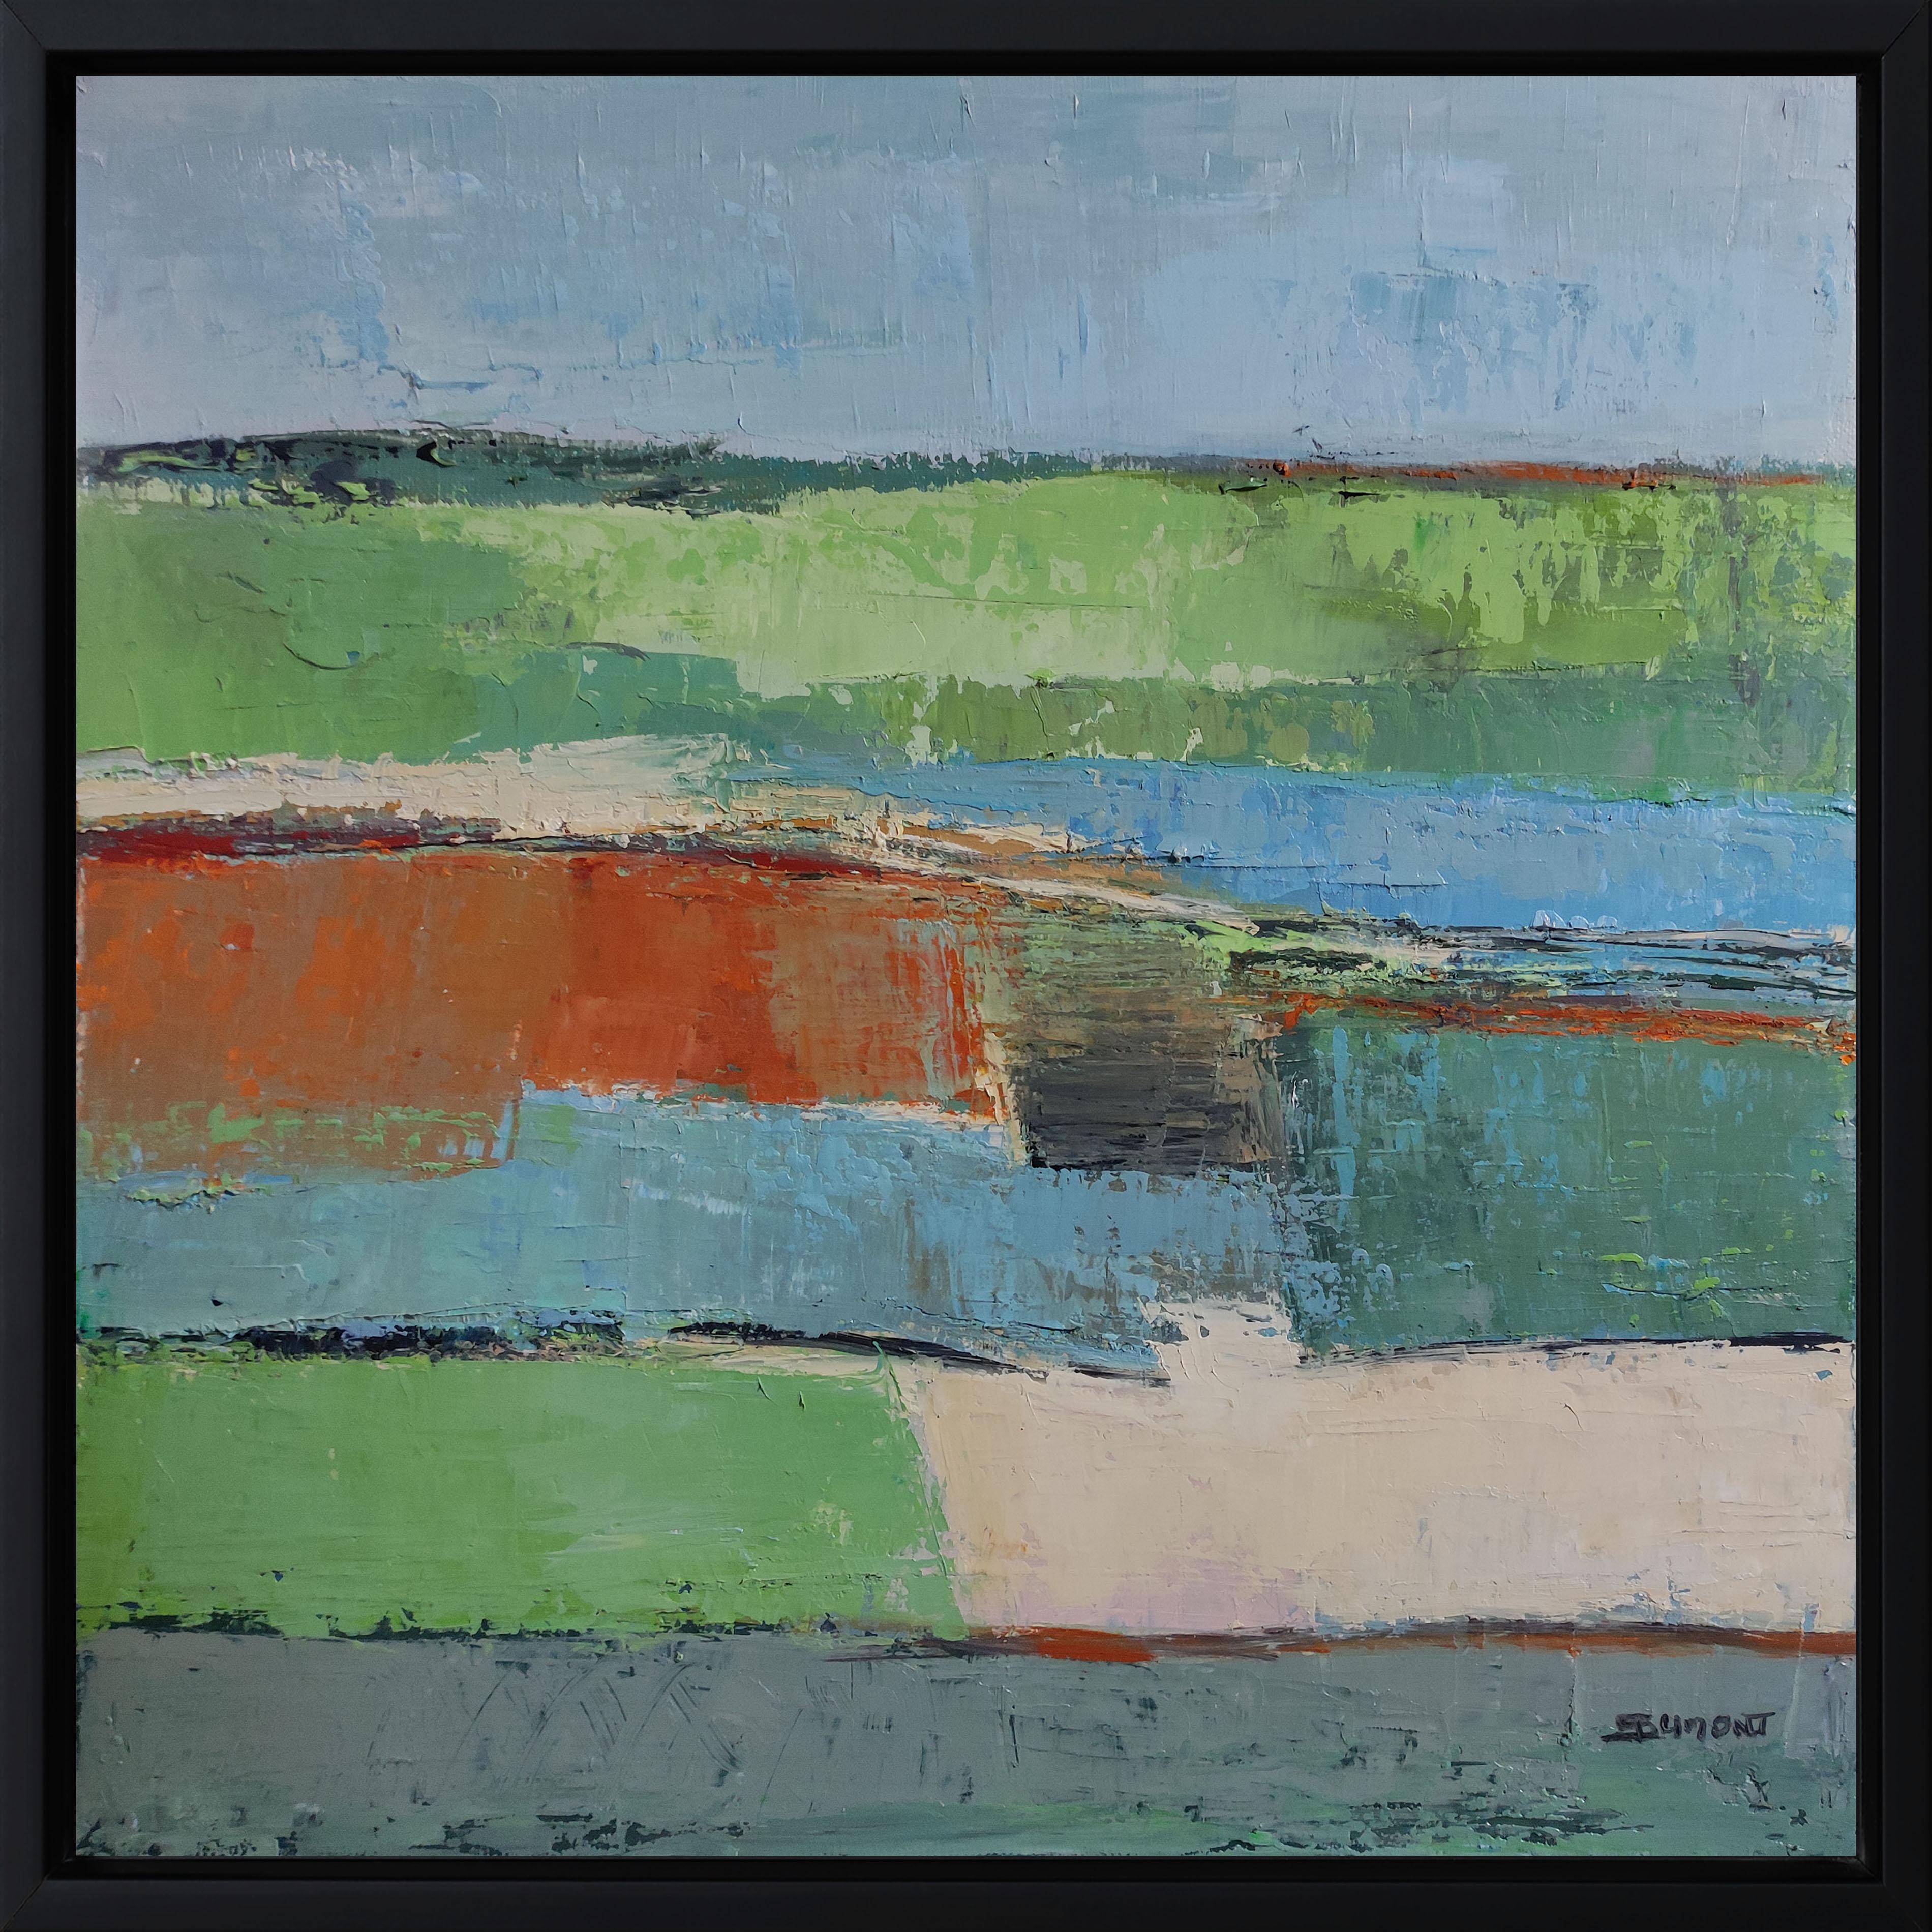 Abstract Painting SOPHIE DUMONT - Nuances ; paysage vert abstrait, contemporain, huile sur toile, campagne